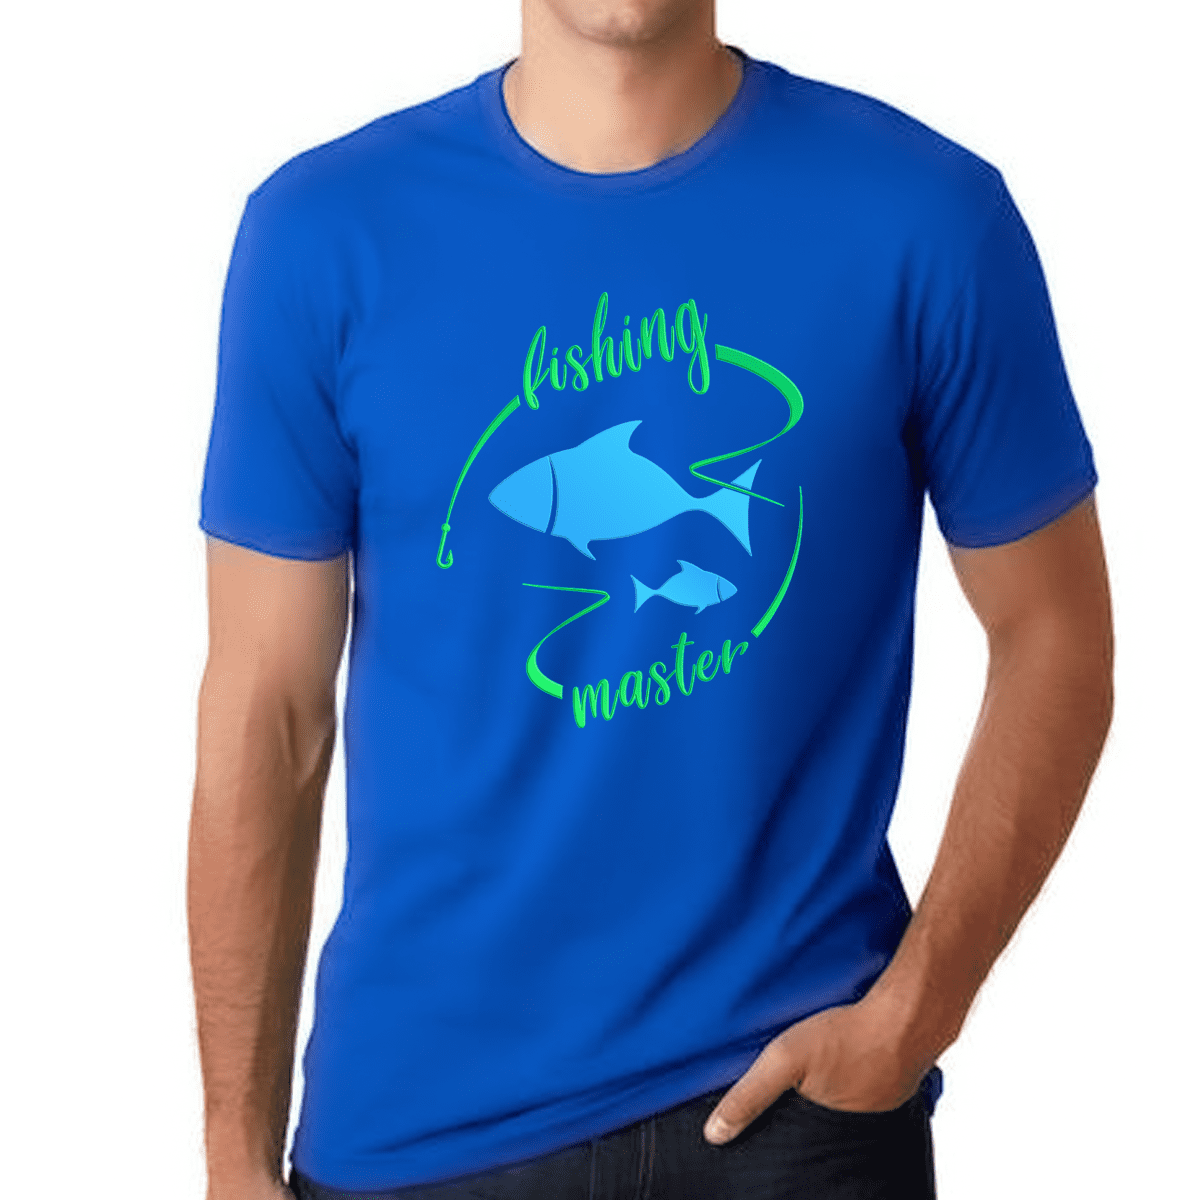 Fishing Shirt - Fishing Shirts for Men - Mens Fishing Shirts